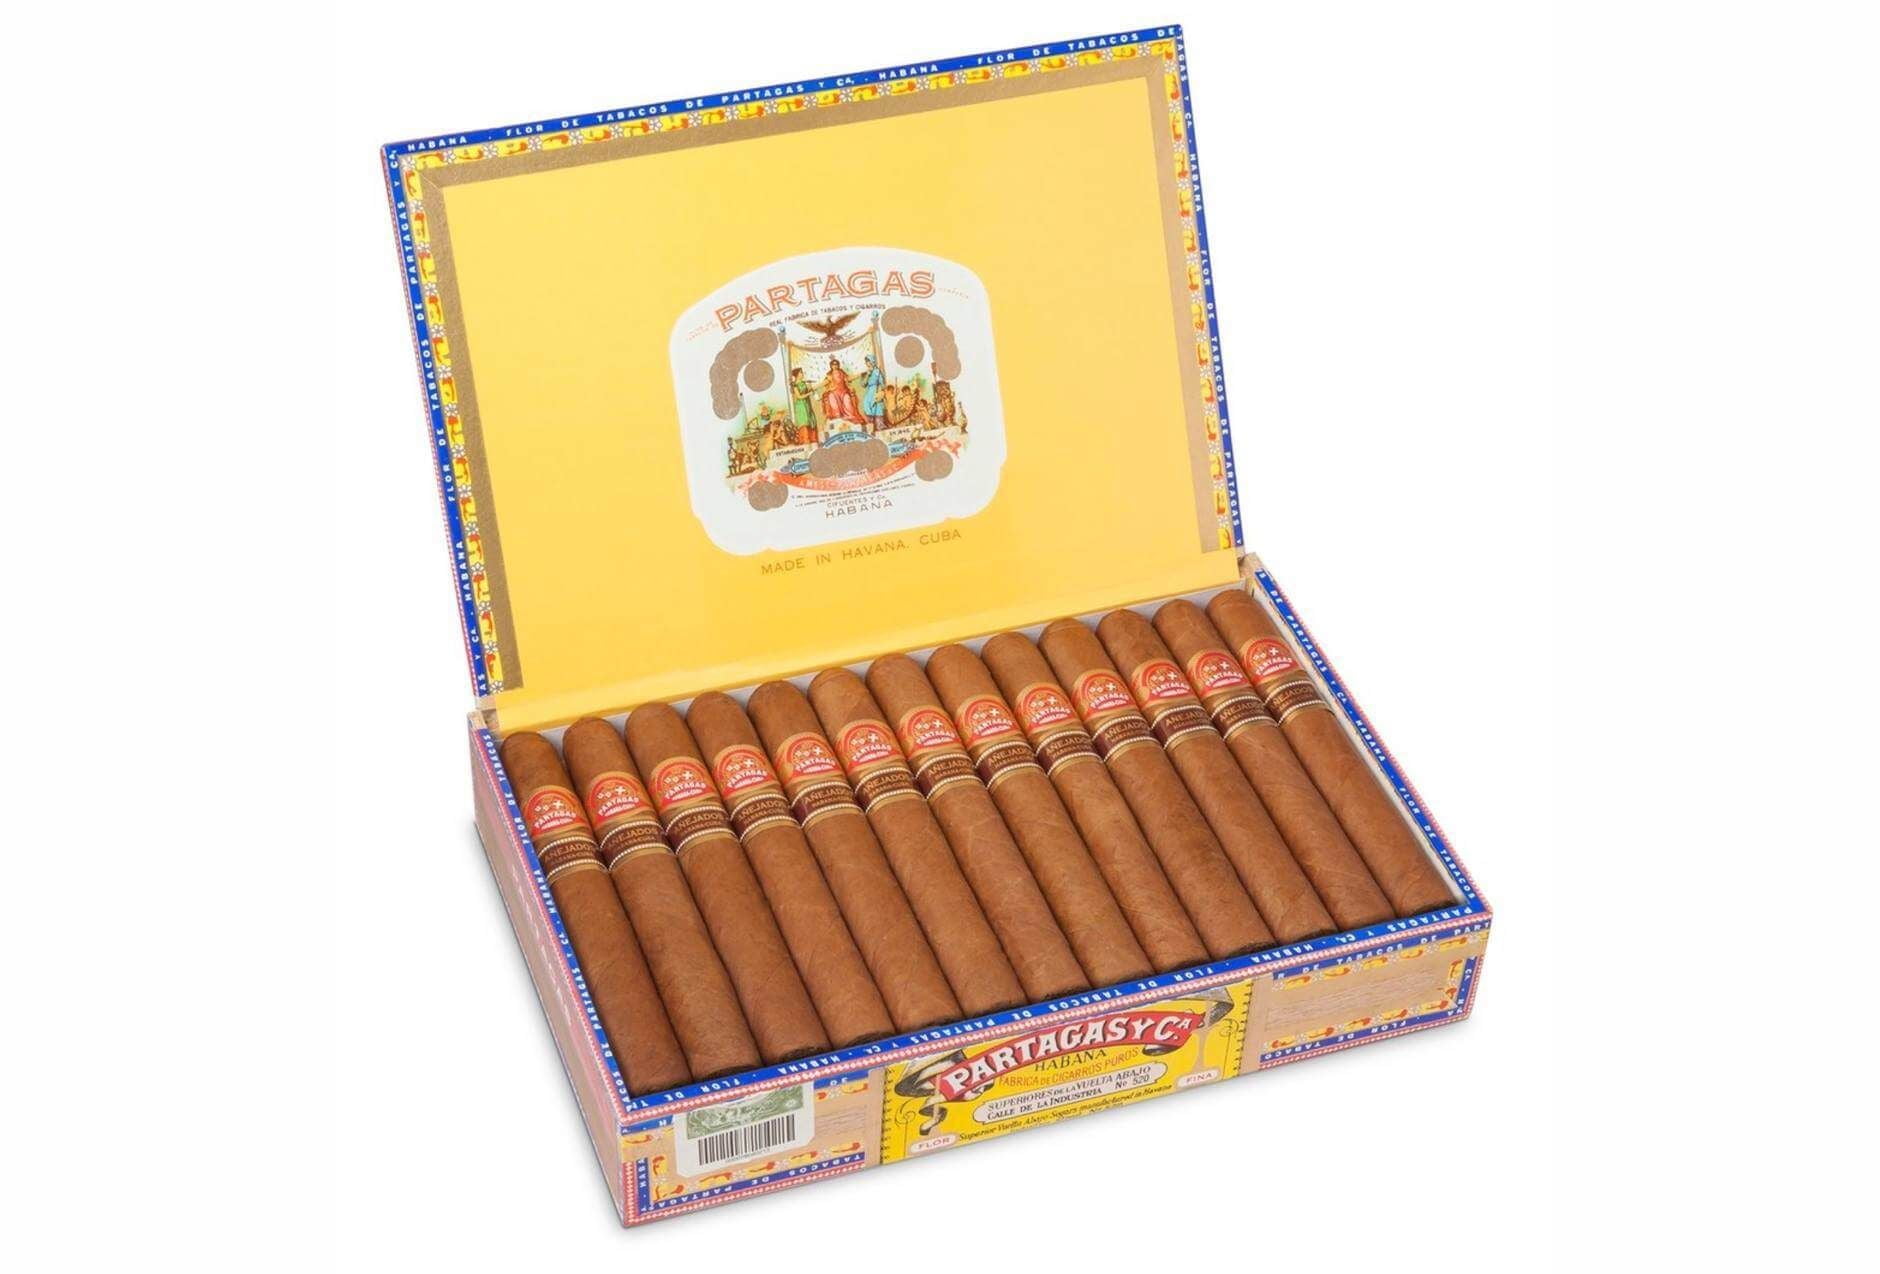 Cigar Partagas Coronas